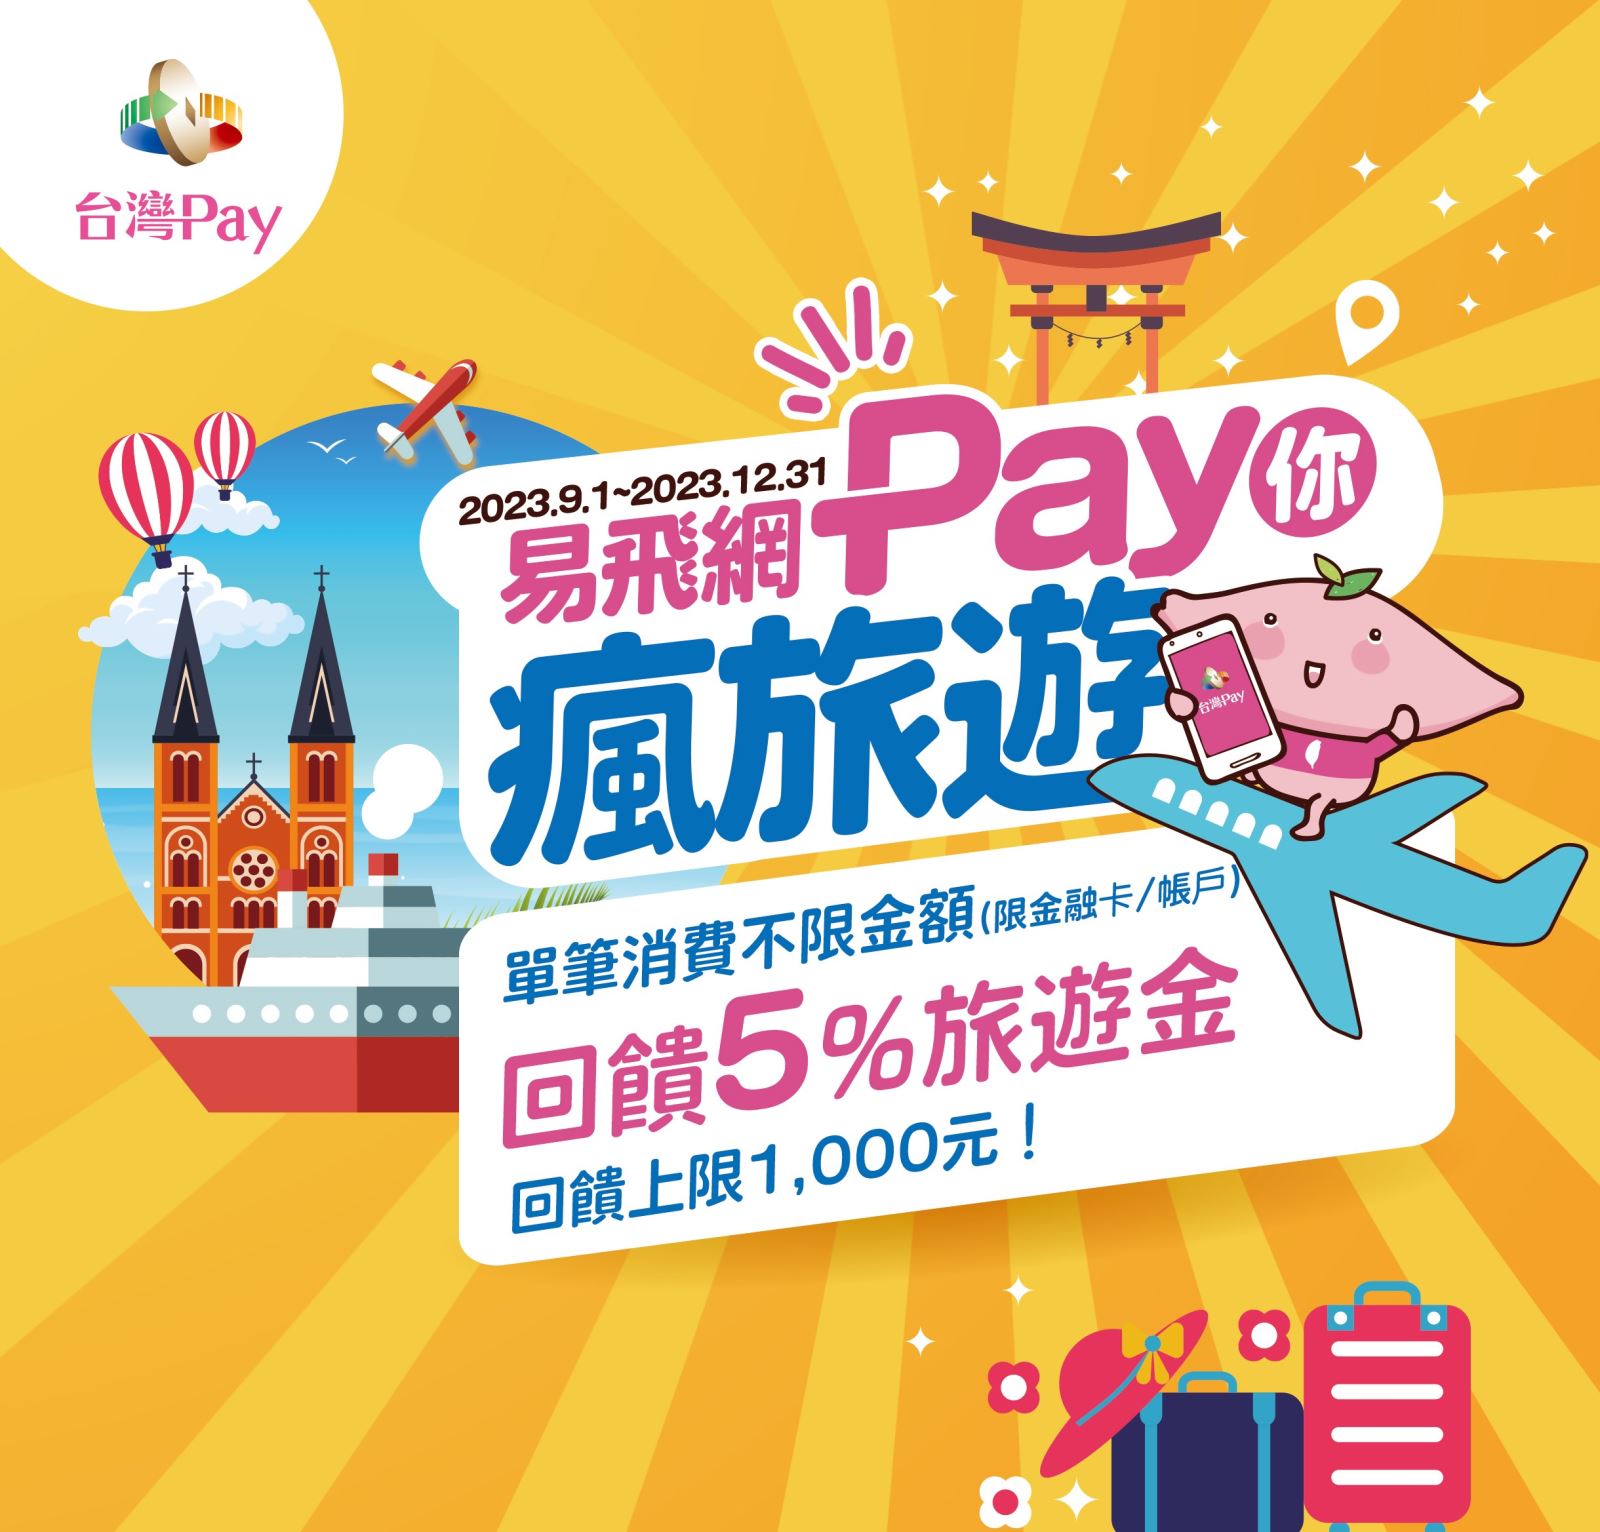 用戶於活動期間至活動地點使用「台灣Pay」進行消費支付，依單筆消費不限金額回饋5%易飛網旅遊金